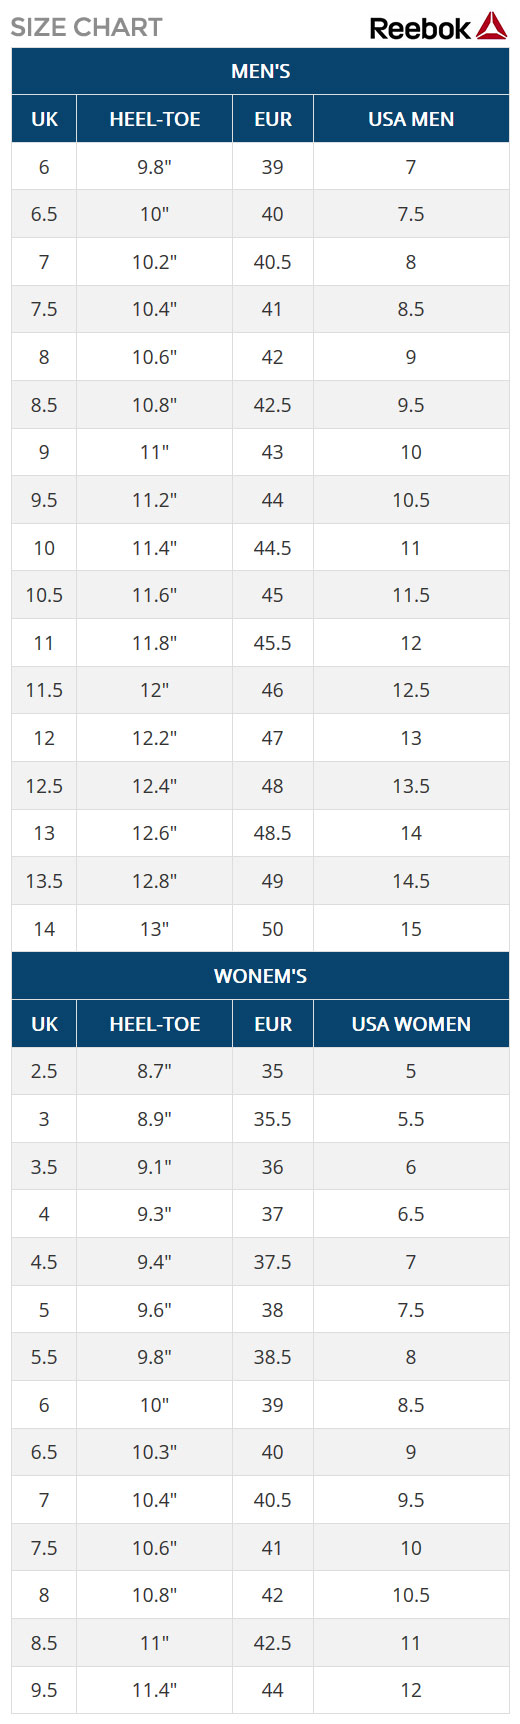 Reebok Shoe Size Conversion Chart